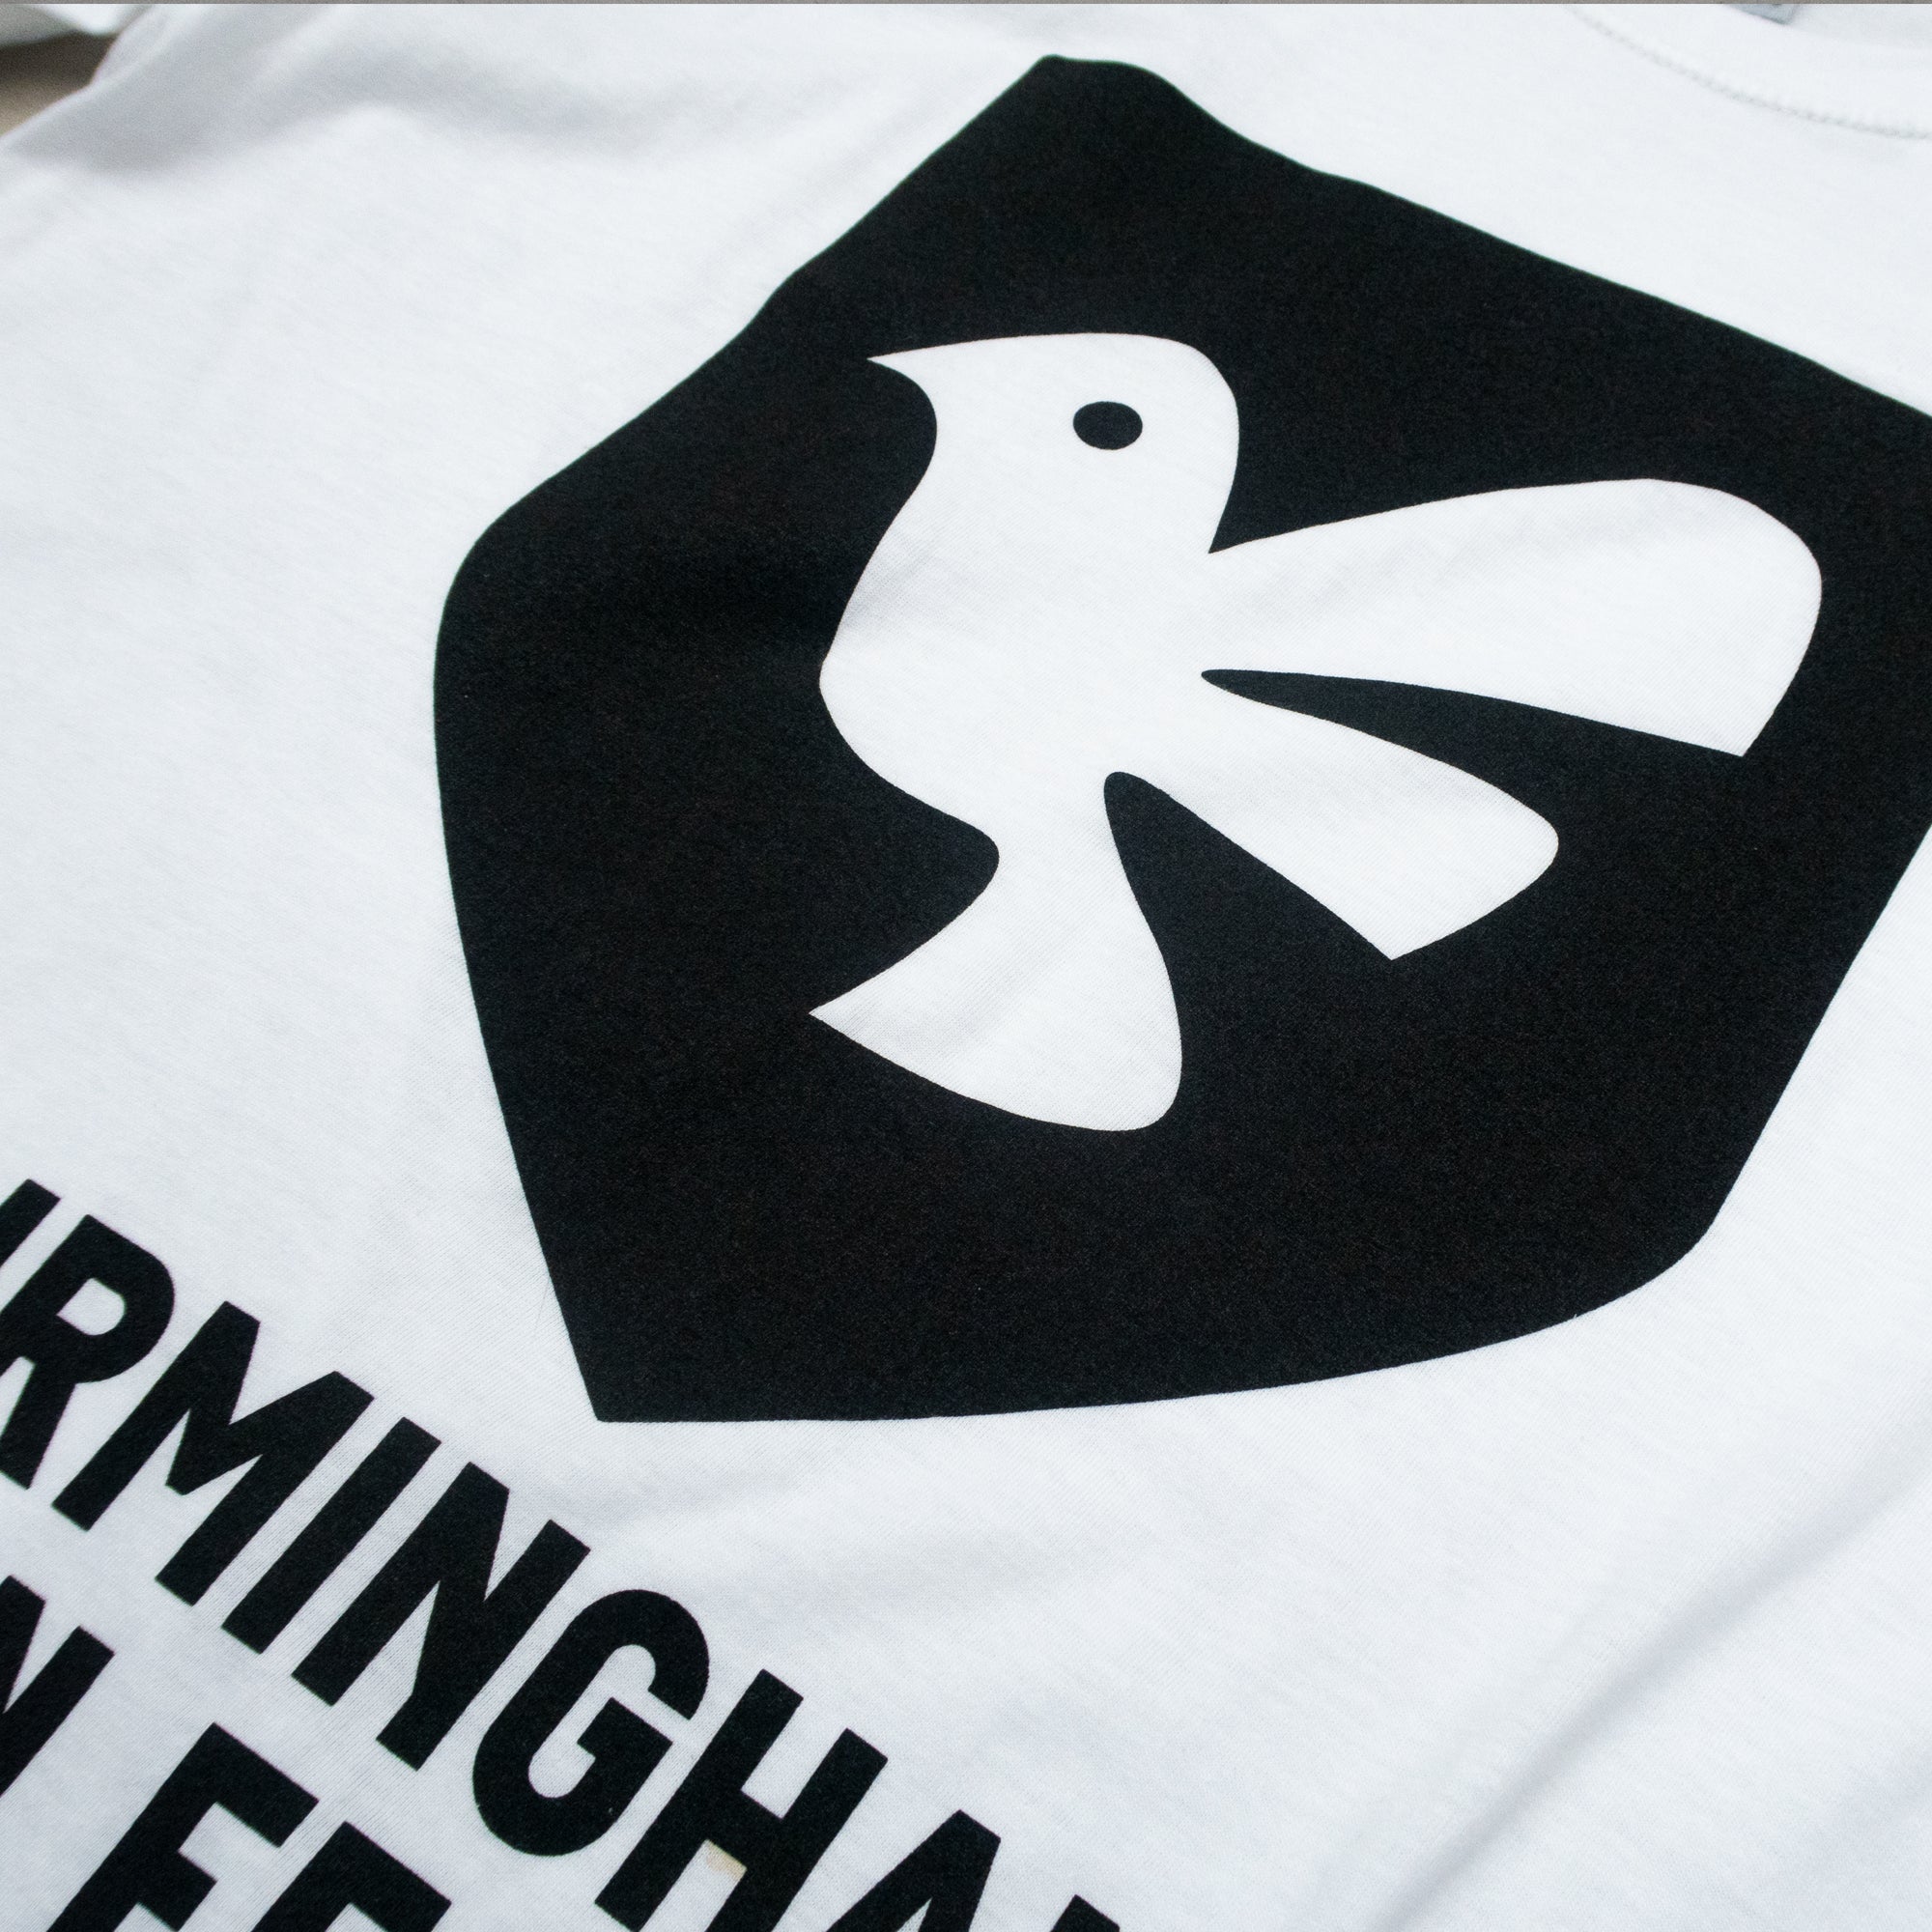 BDF 2022 Bird T-Shirt